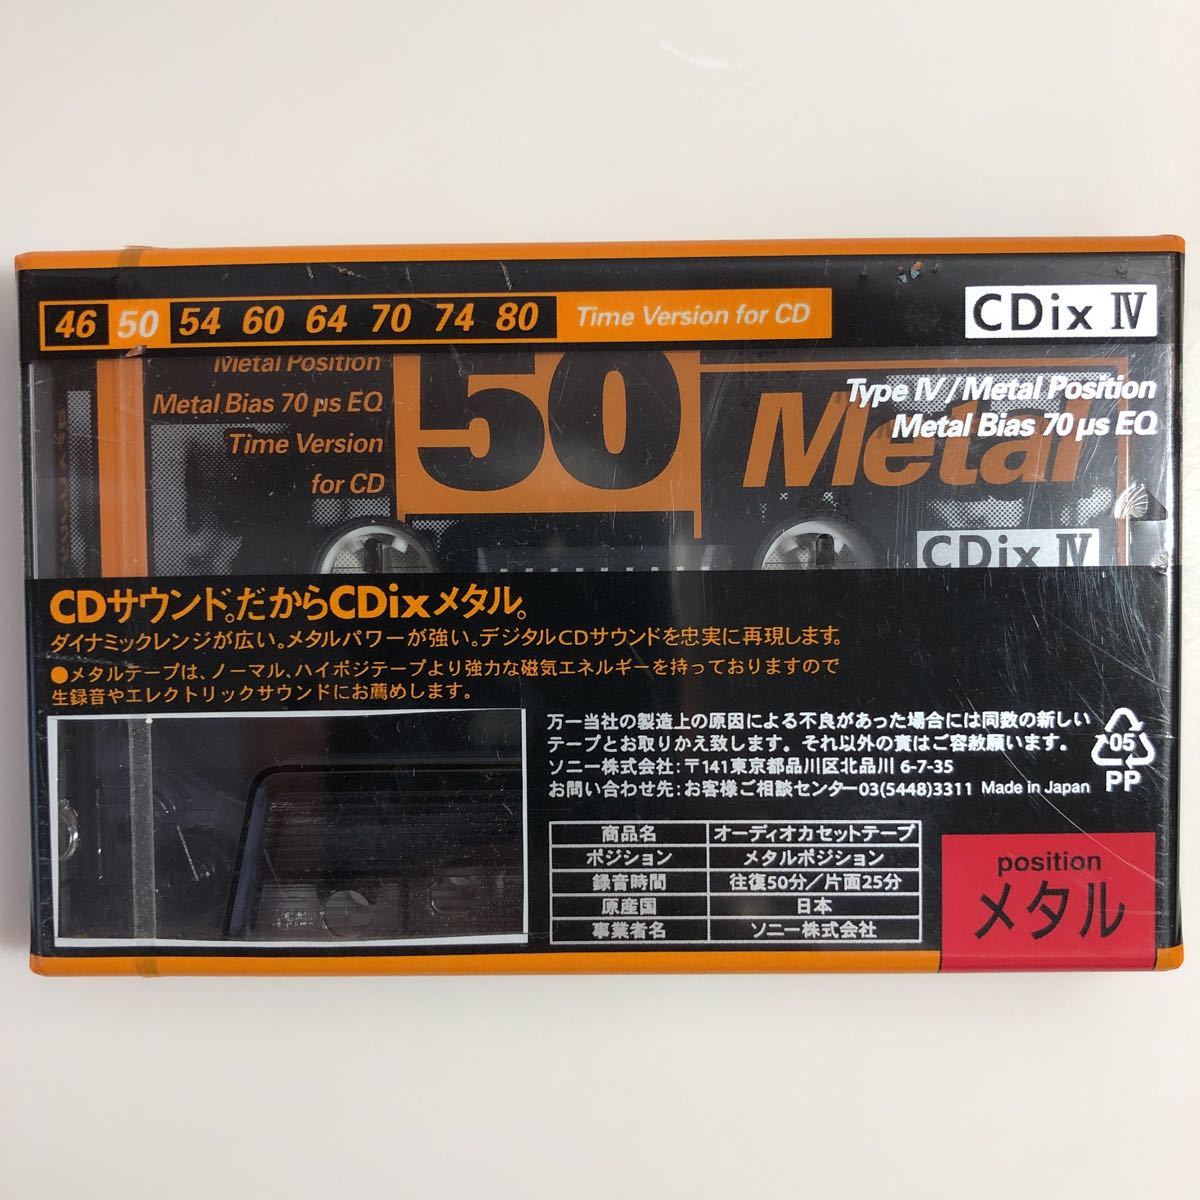 カセットテープ メタルテープSONY METAL CDixⅣ50分2本 JChere雅虎拍卖代购